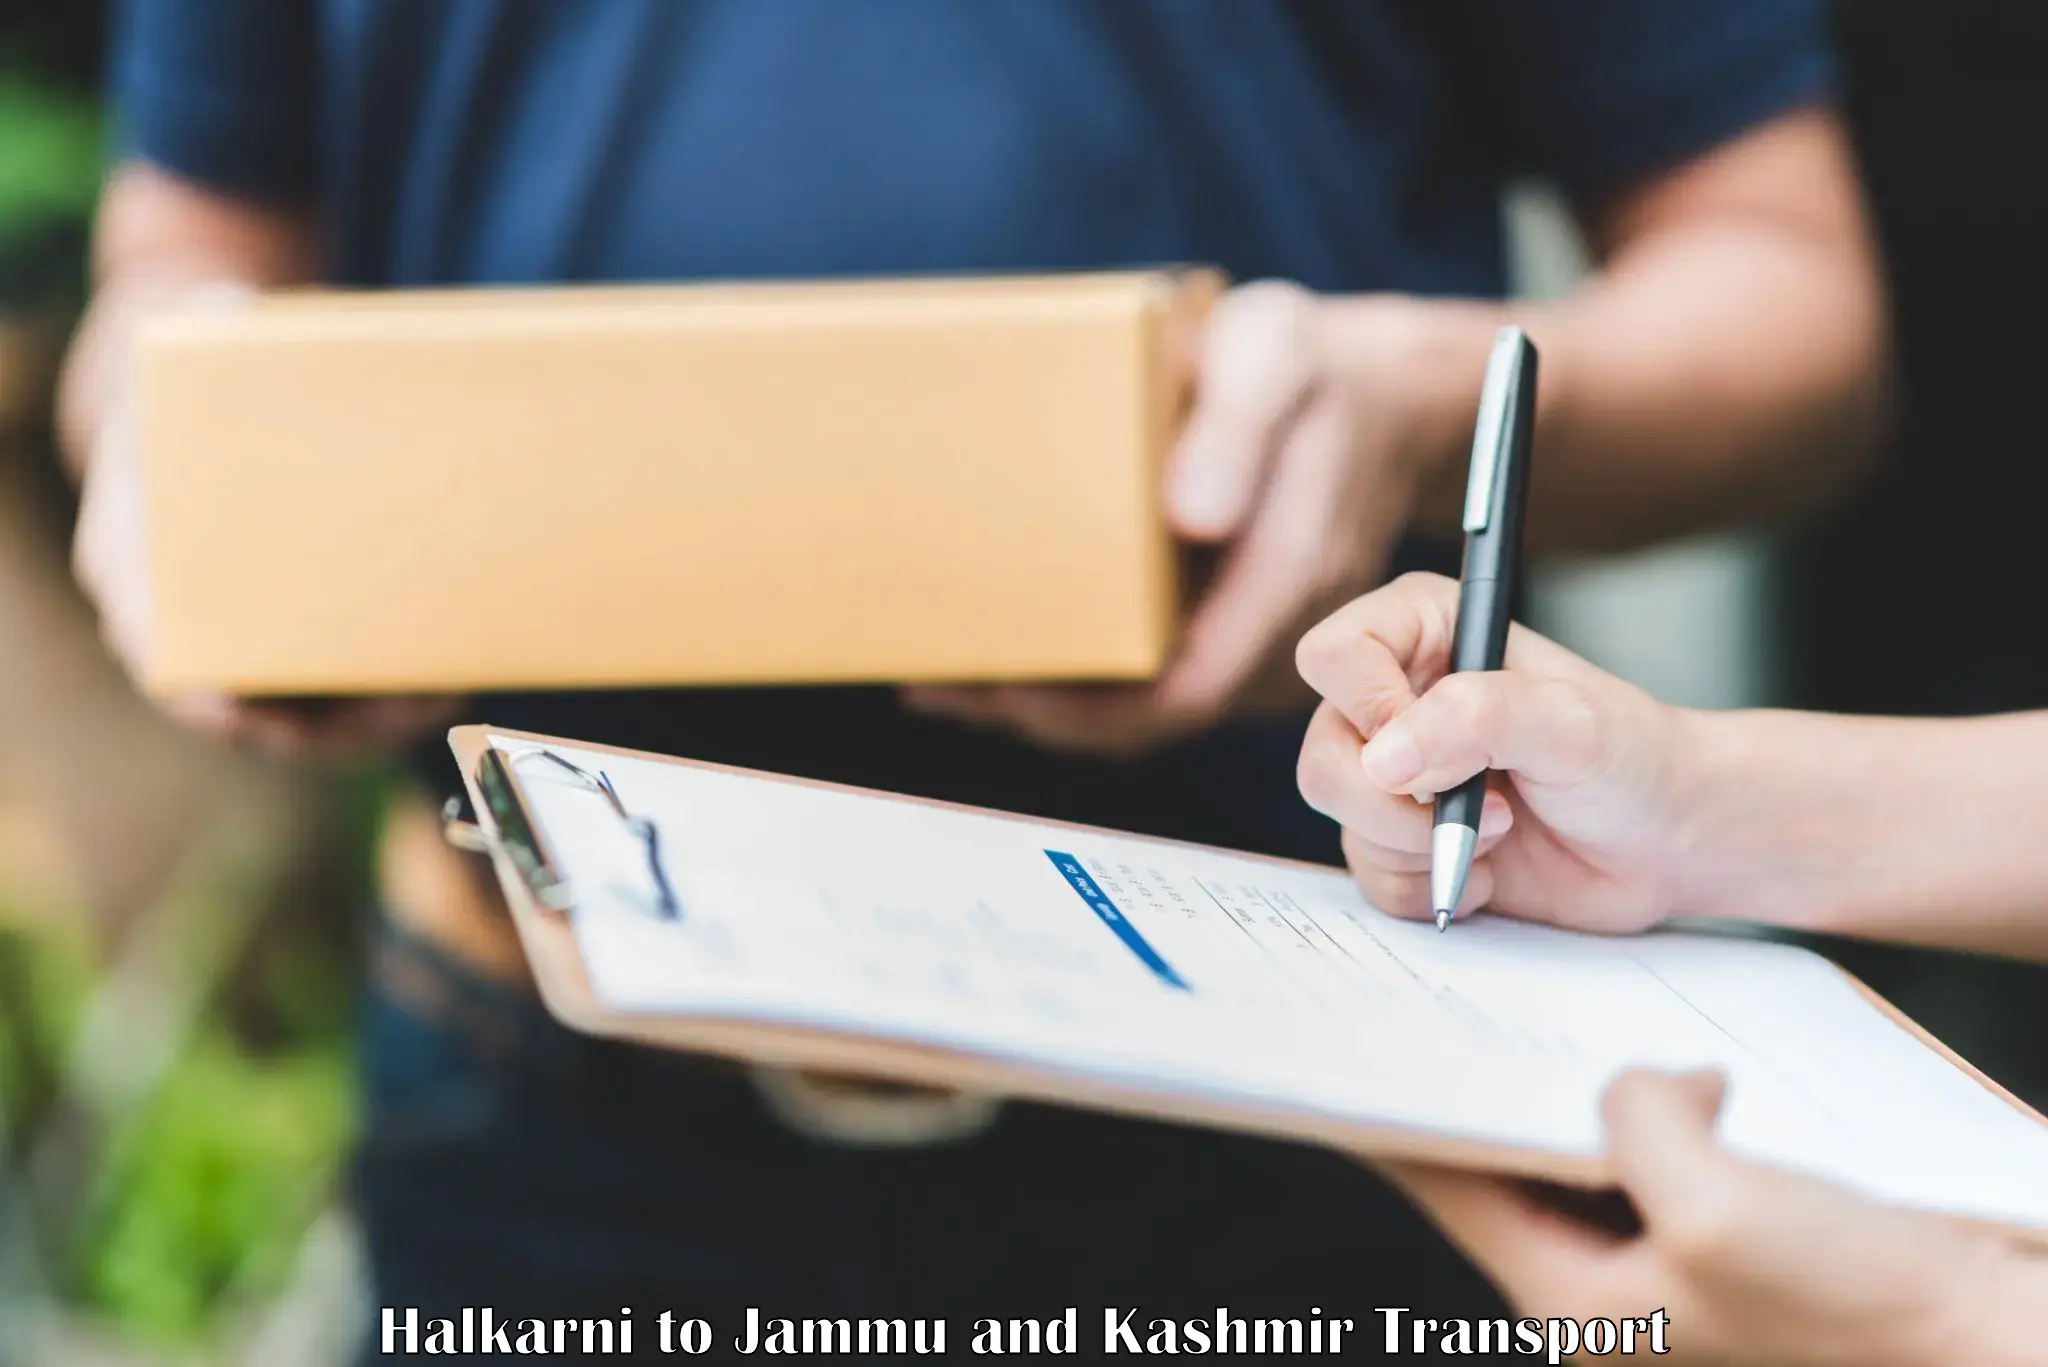 Nationwide transport services Halkarni to Anantnag